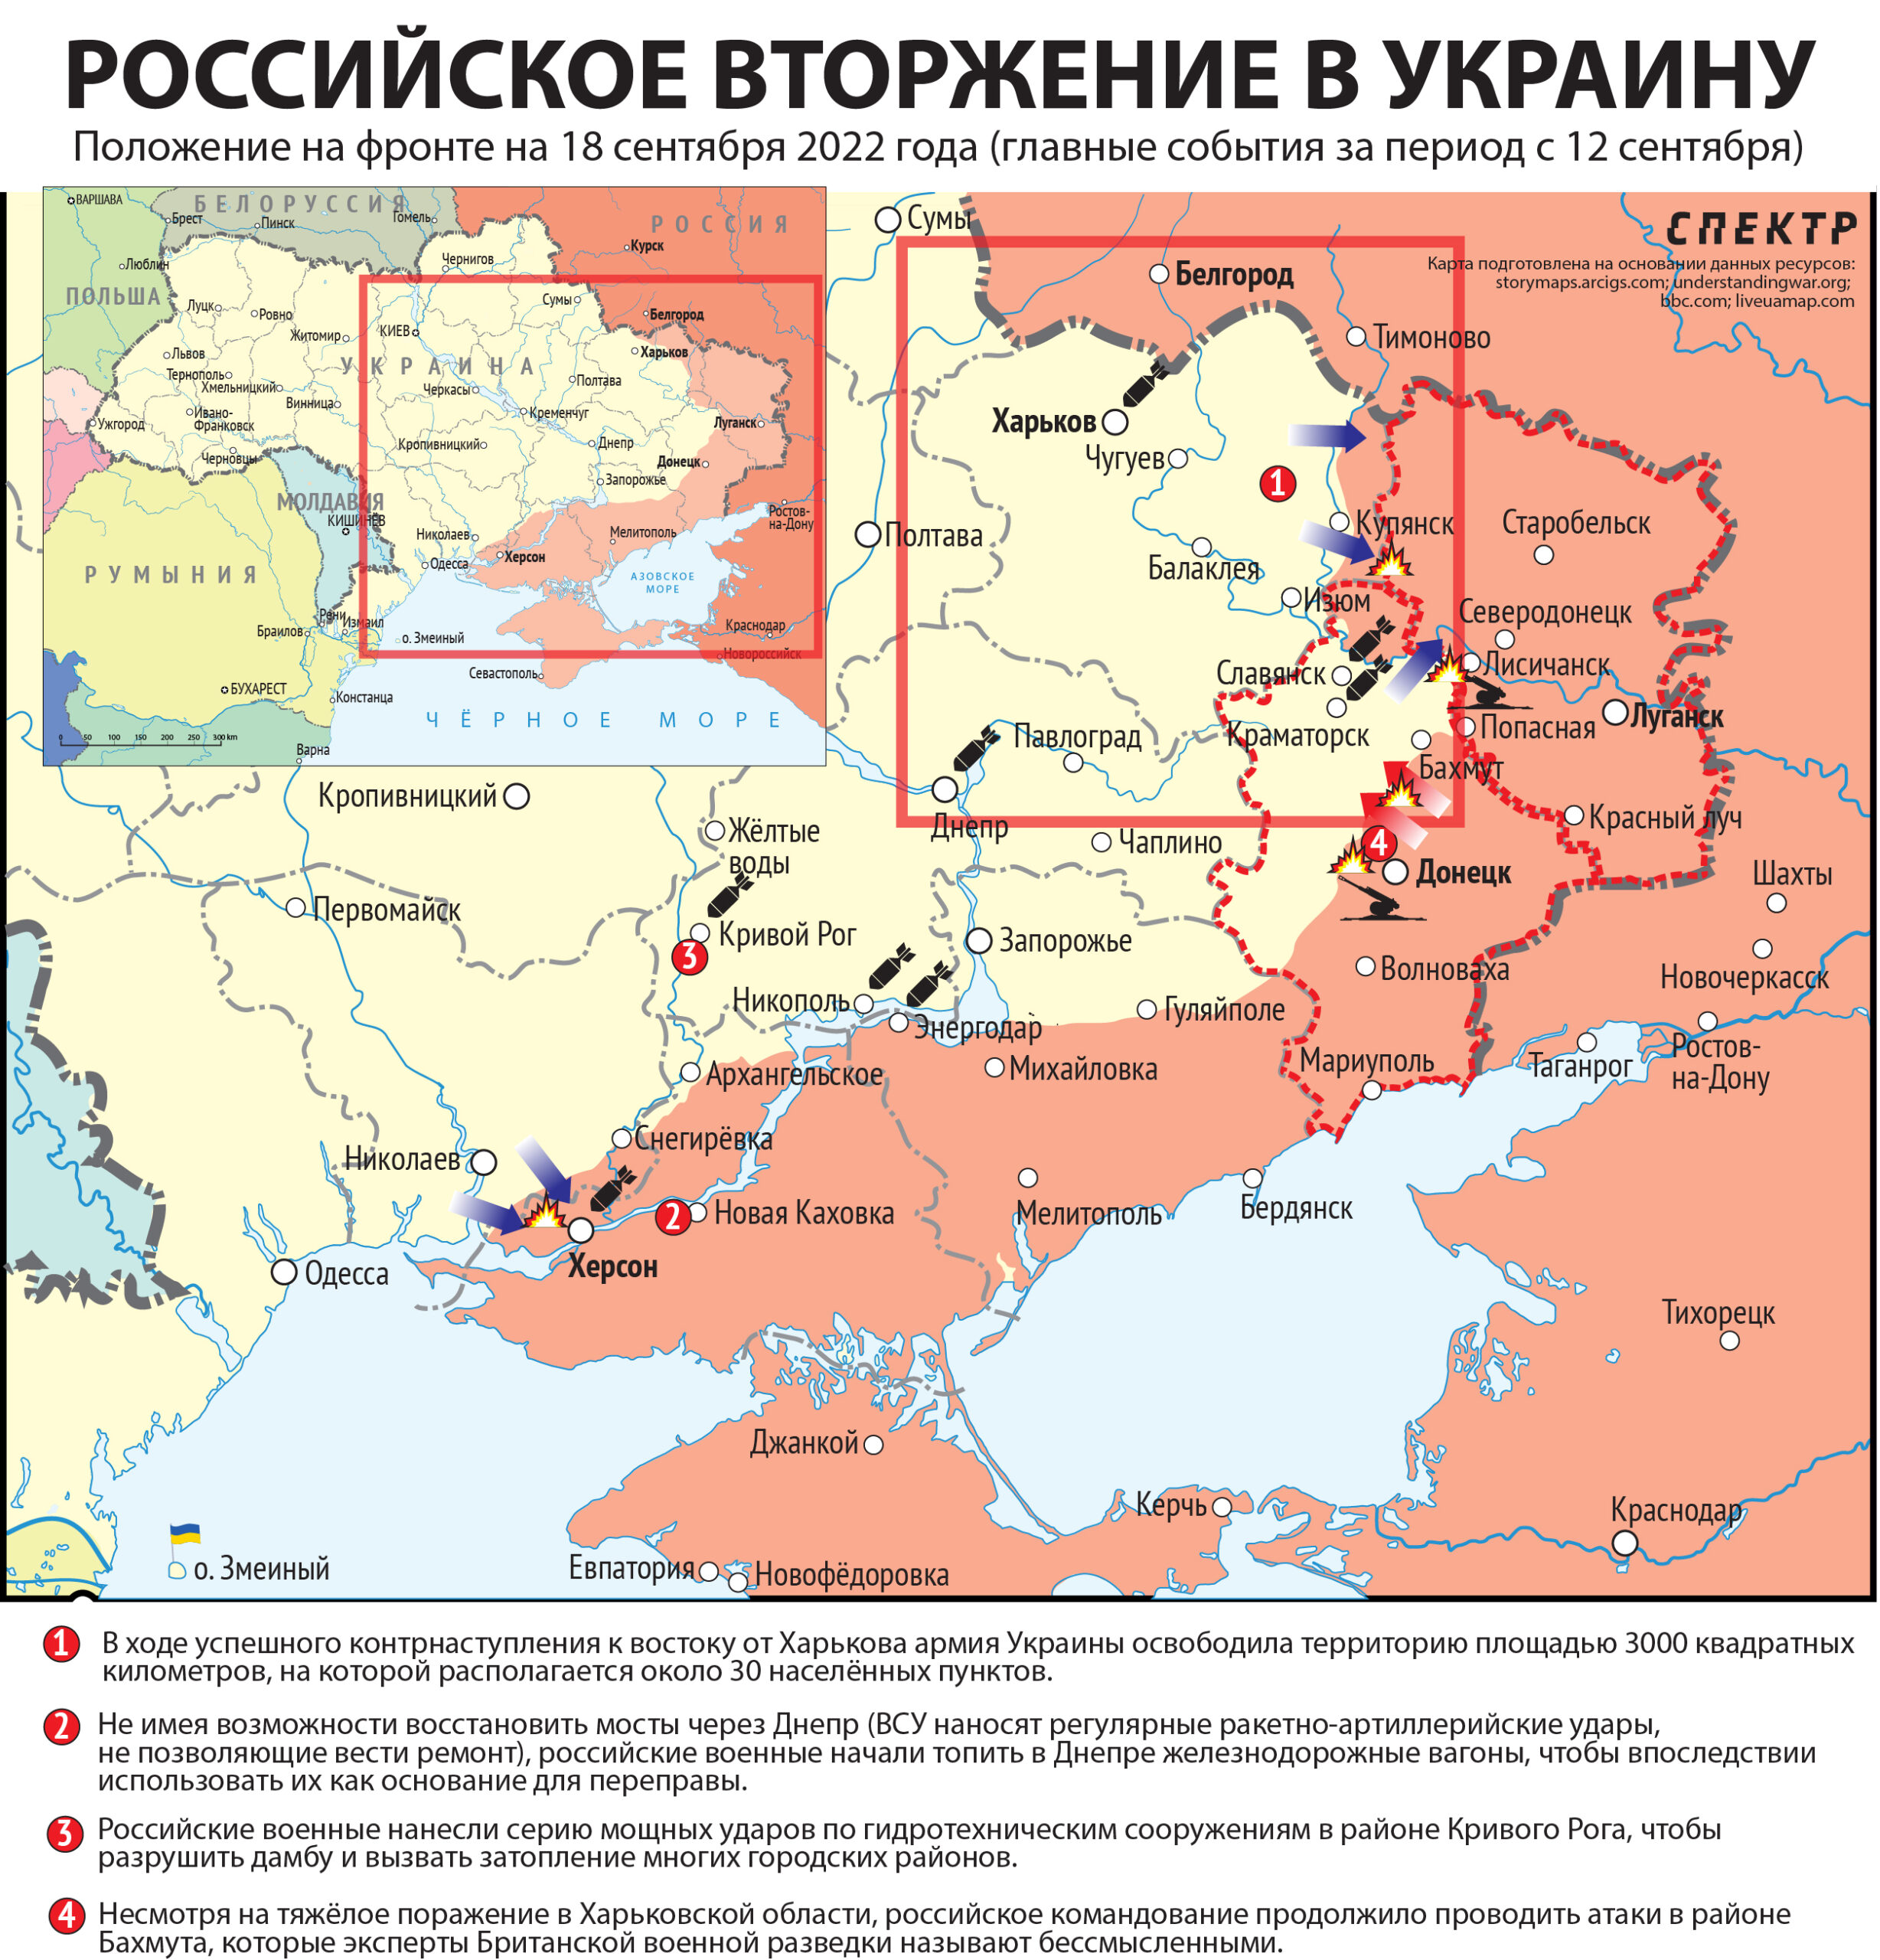 Карта значимых событий войны в Украине 6-11 сентября. Расшифровка нумерованных ссылок в следующей иллюстрацииКарта значимых событий войны в Украине 6−11 сентября 2022 года.